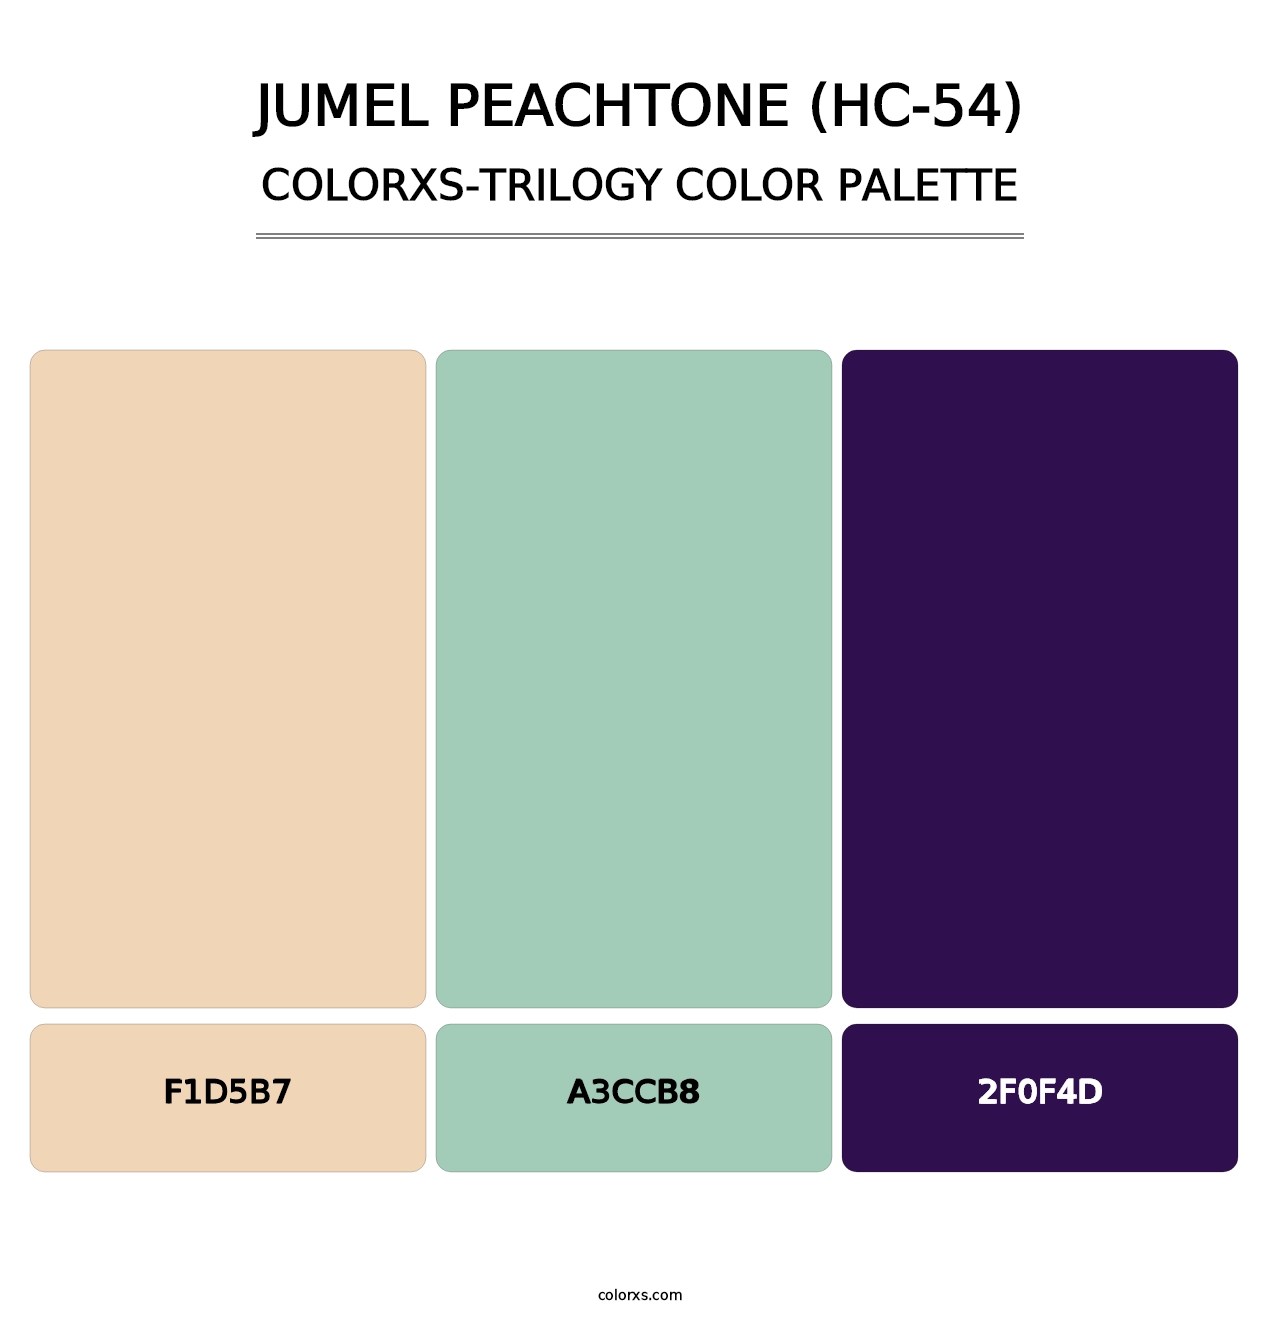 Jumel Peachtone (HC-54) - Colorxs Trilogy Palette